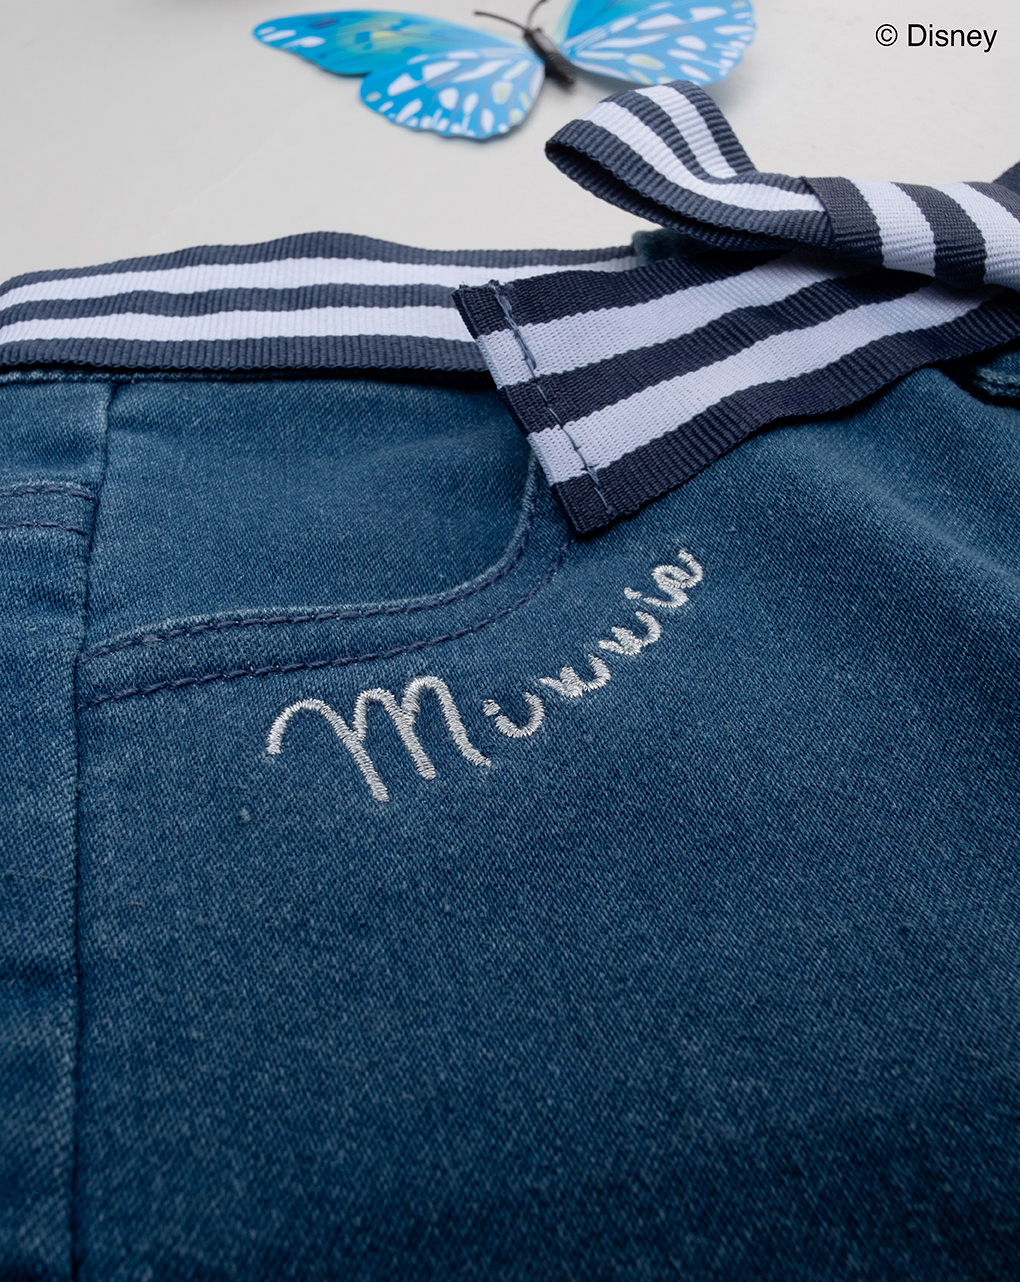 βρεφικό τζιν παντελόνι μπλε με τη minnie για κορίτσι - Prénatal